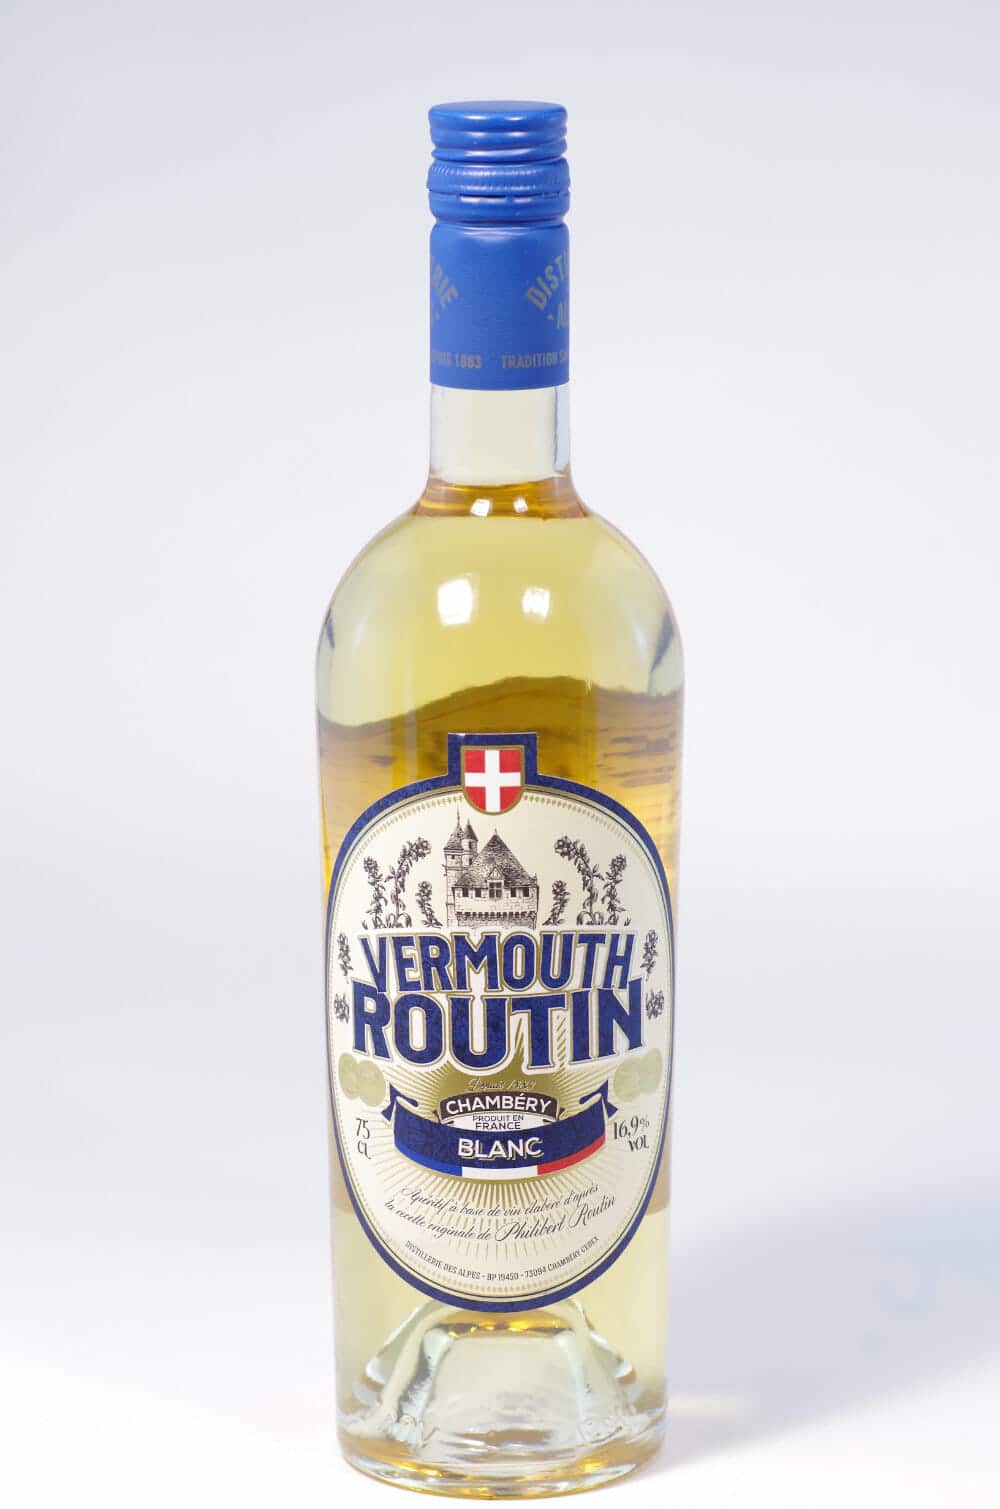 Vermouth Routin Blanc